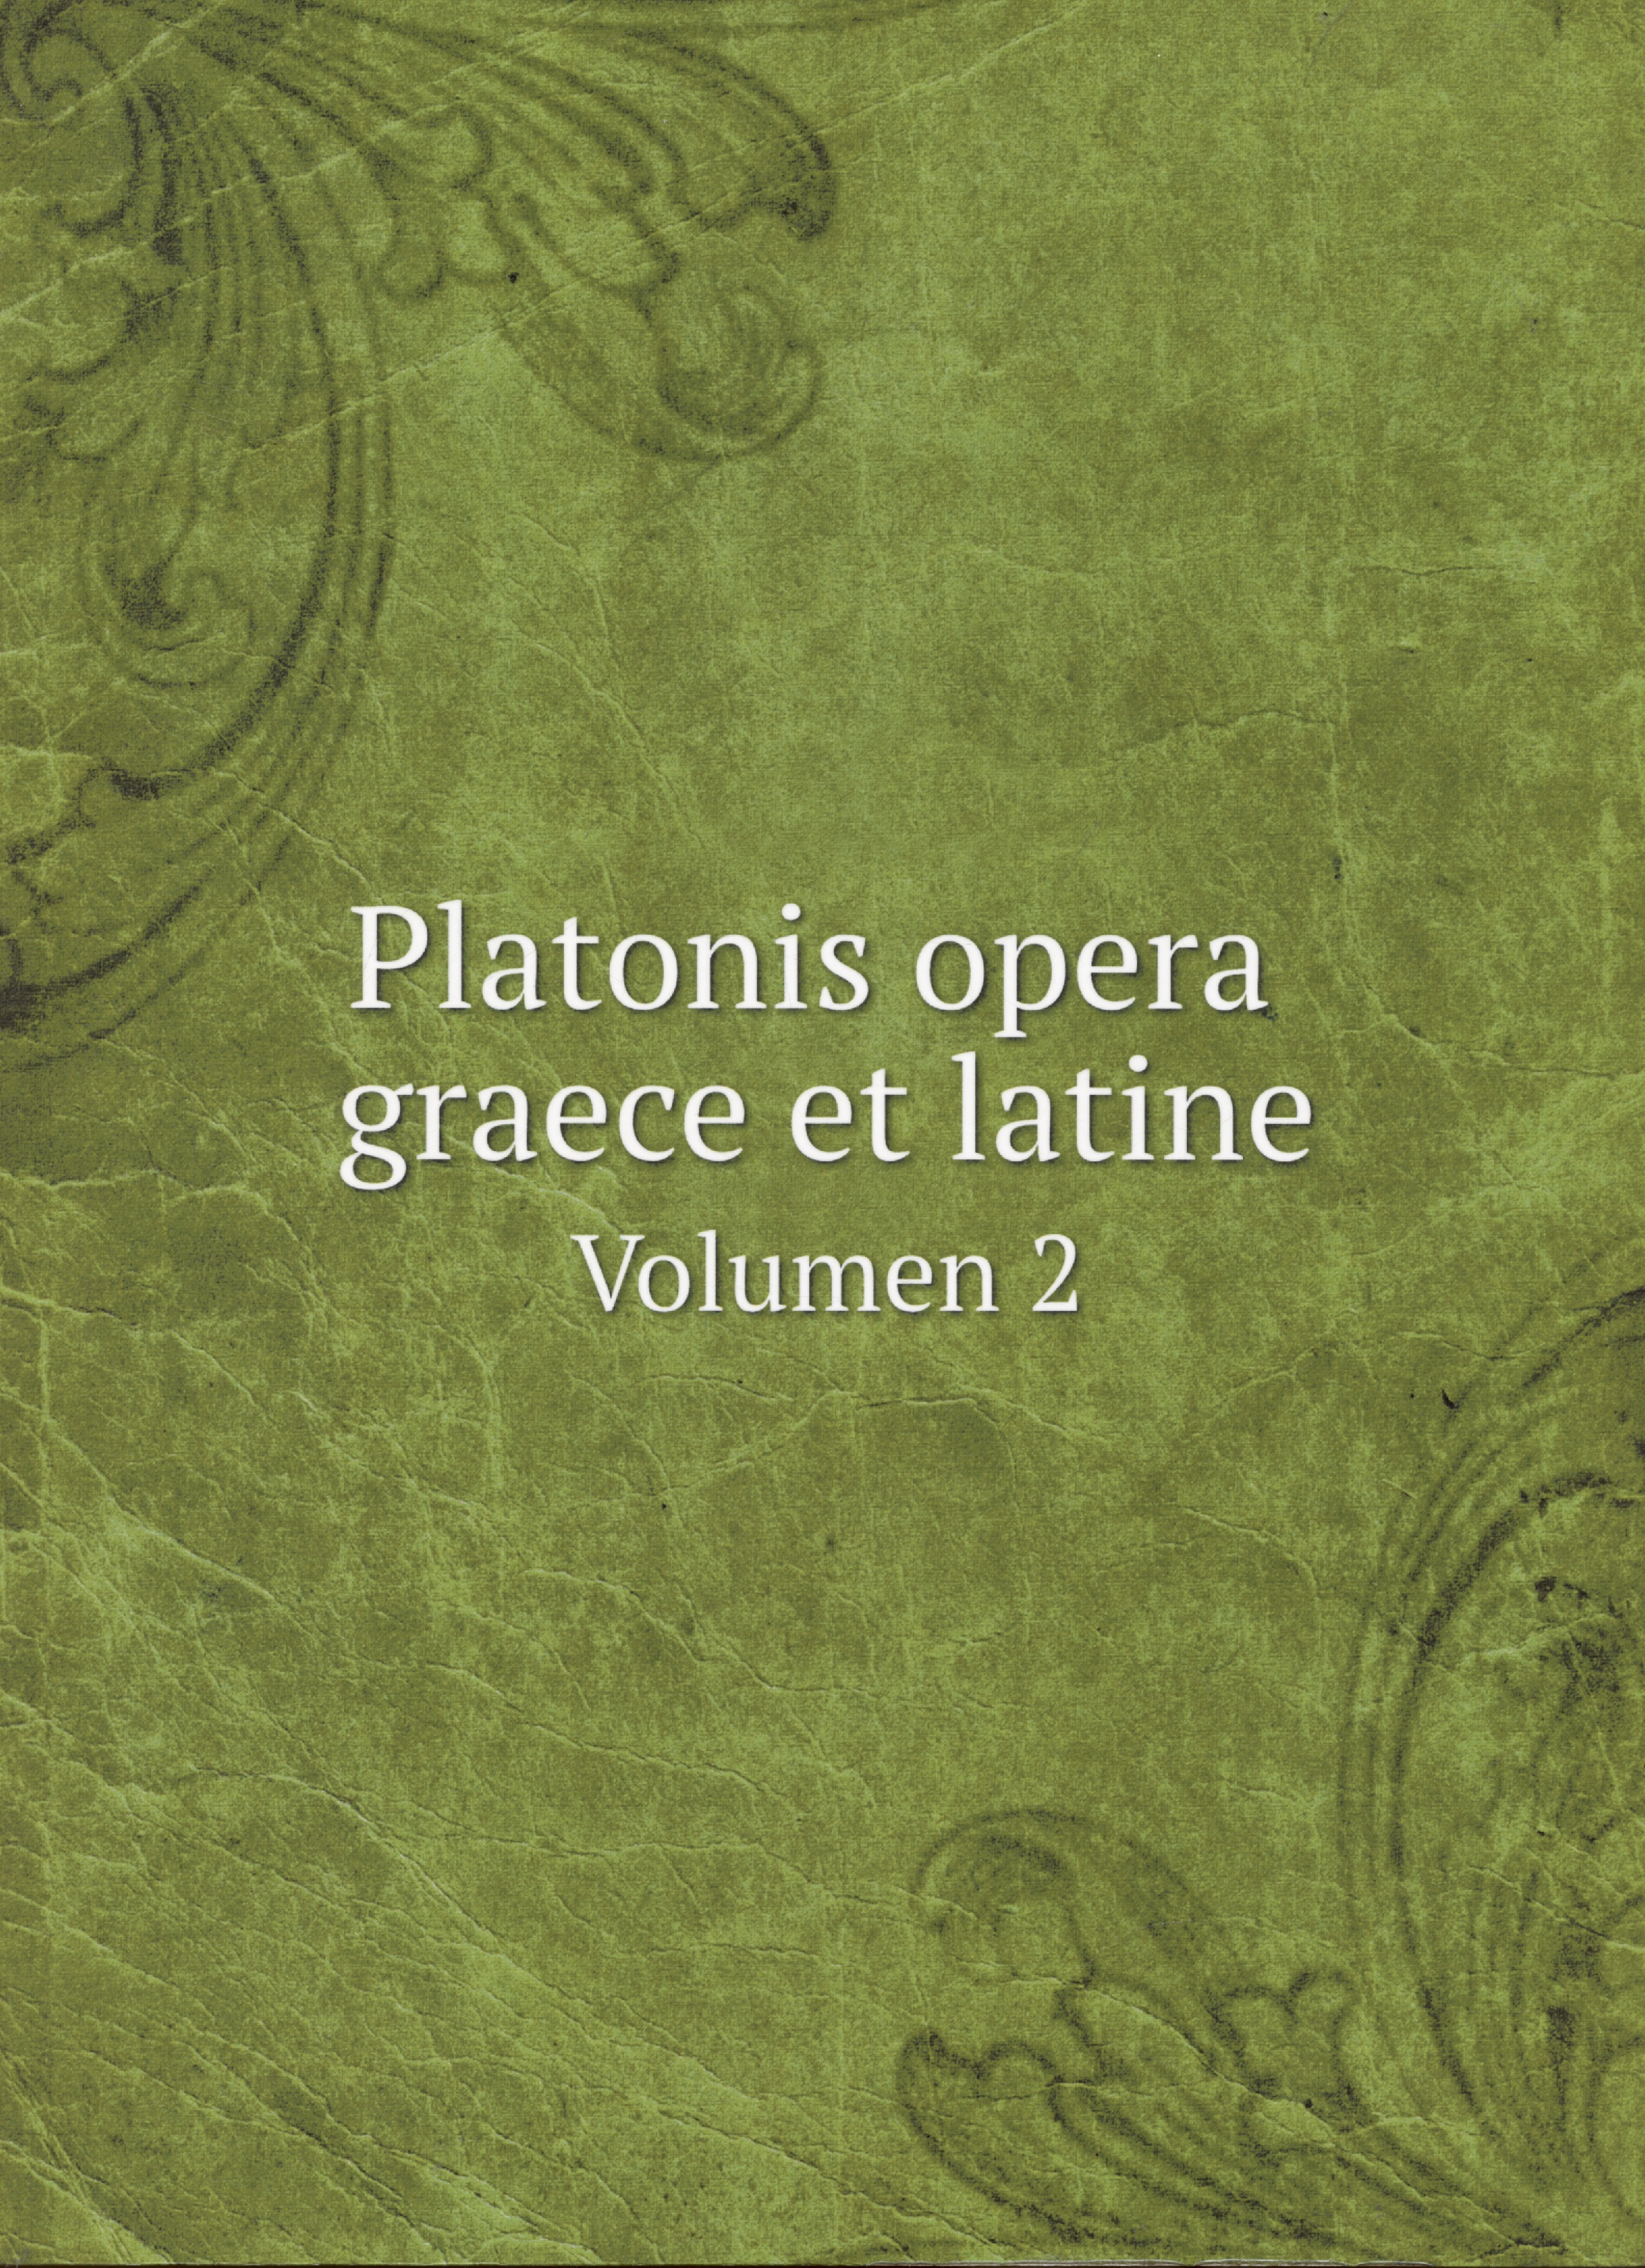 Platonis opera graece et latine. Volumen 2